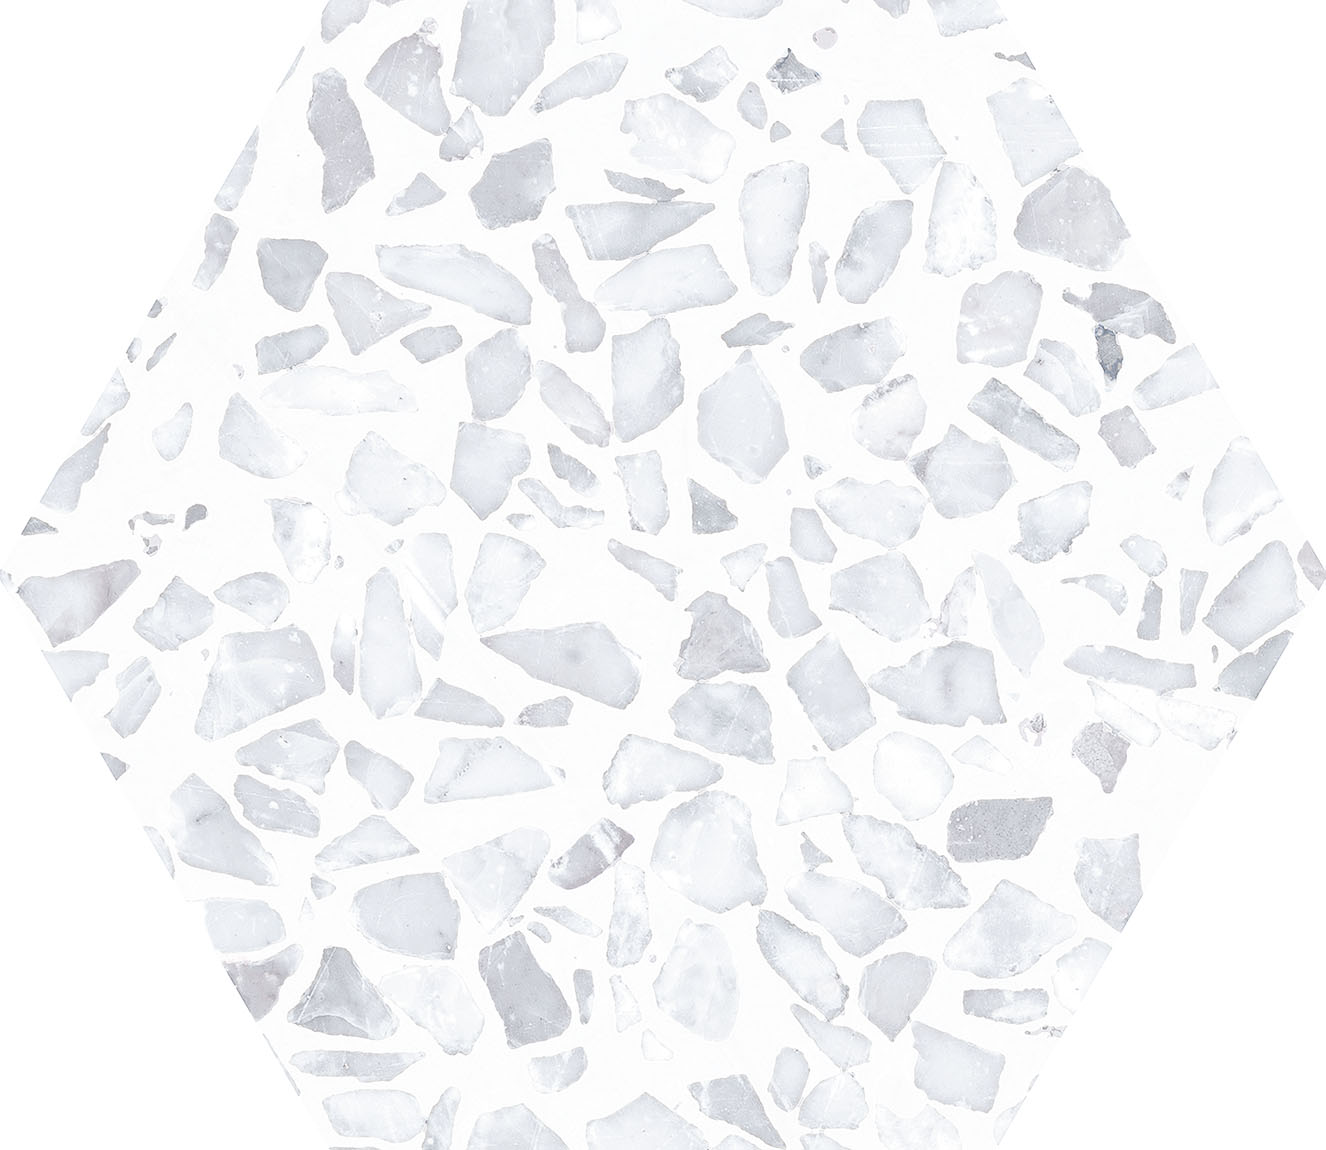 Urbanixx Gres Tarfala Bodenfliesen Terrazzooptik Hexagon Hellgrau Matt 23,2x26,7 cm rektifiziert